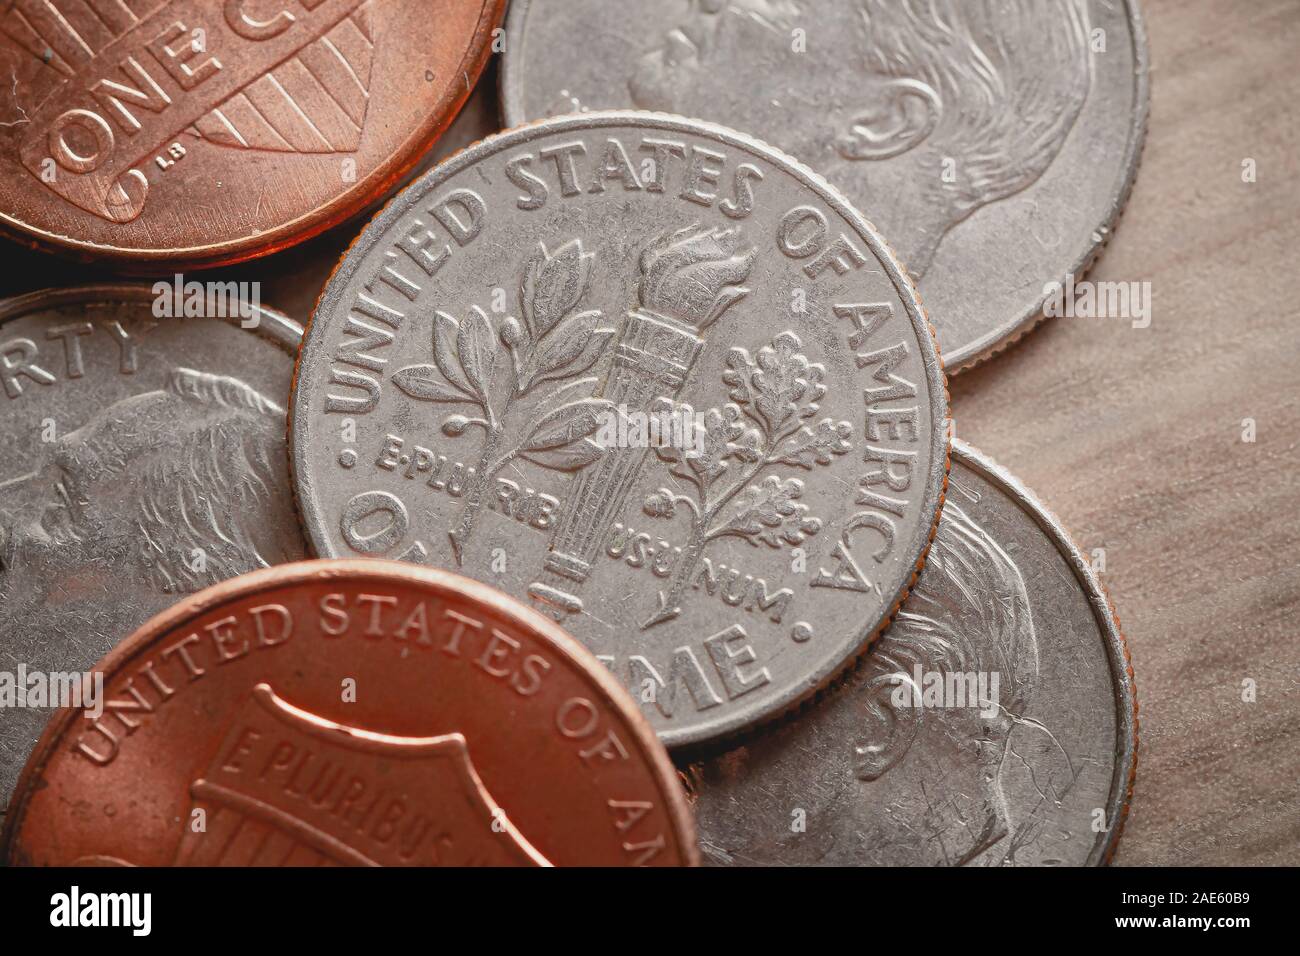 Foto de agrupados monedas de dólar sobre la mesa. Foto de stock